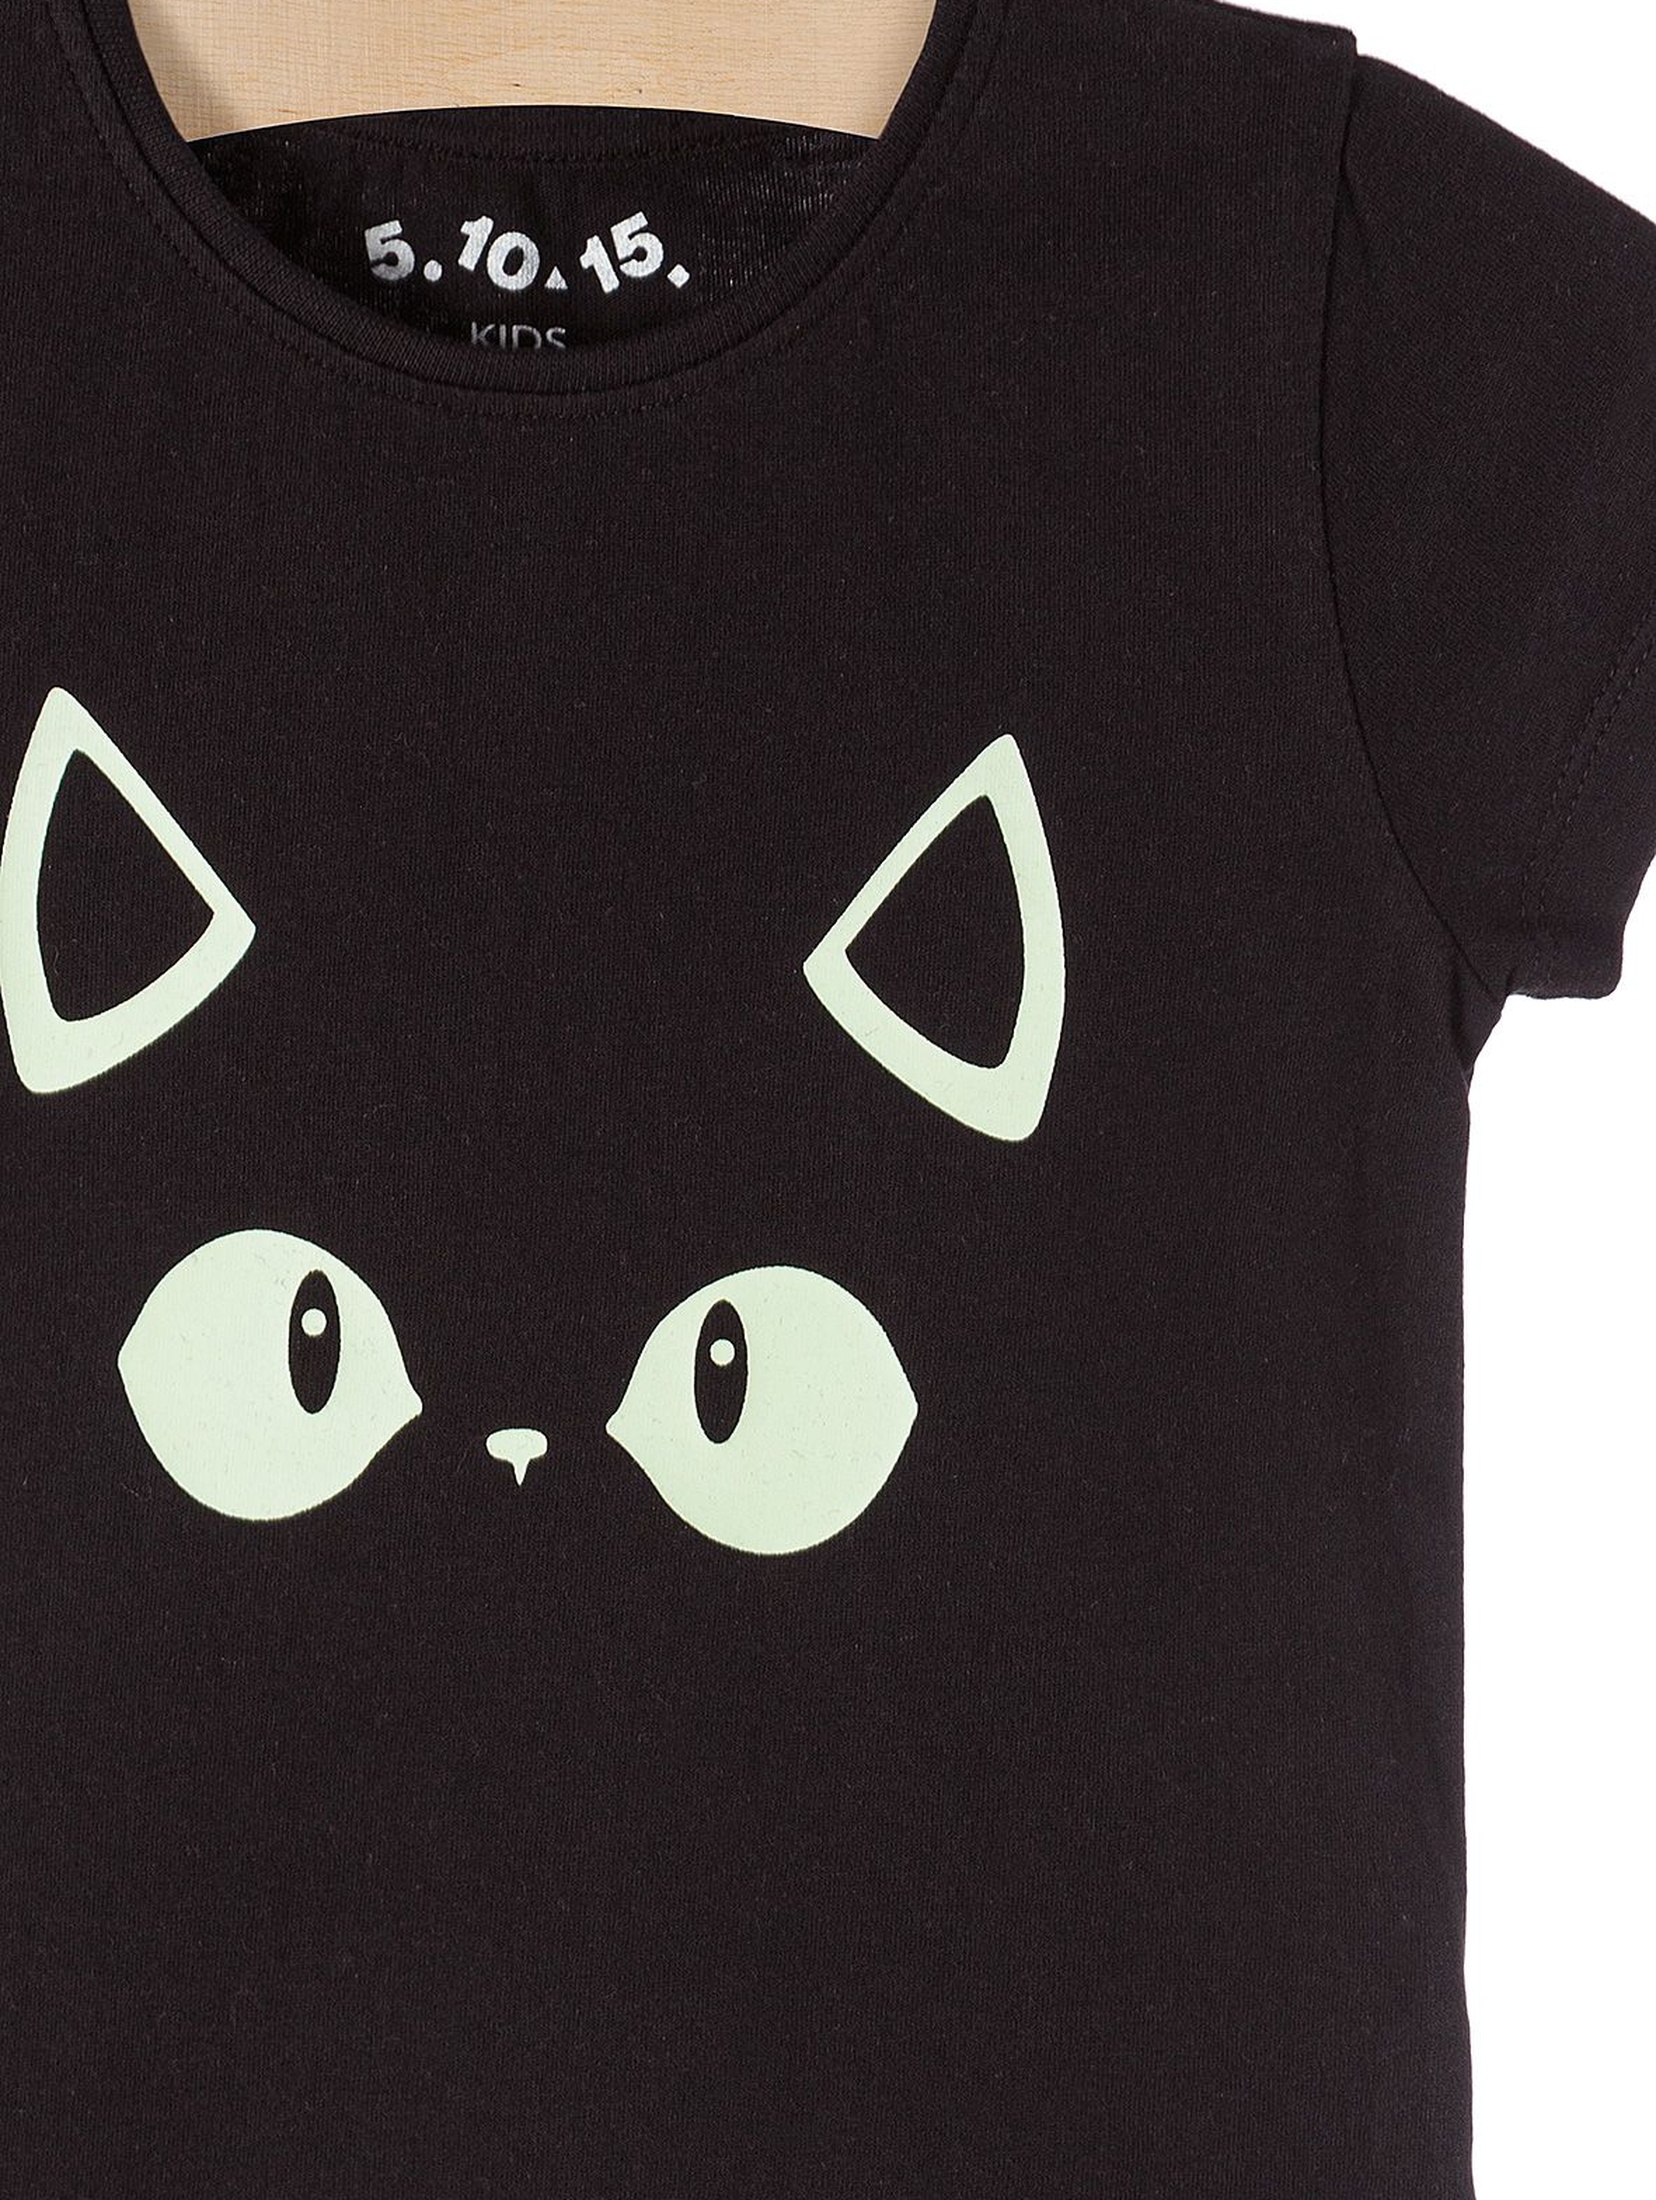 T-shirt dziewczęcy czarny z oczami kota- świeci w ciemności